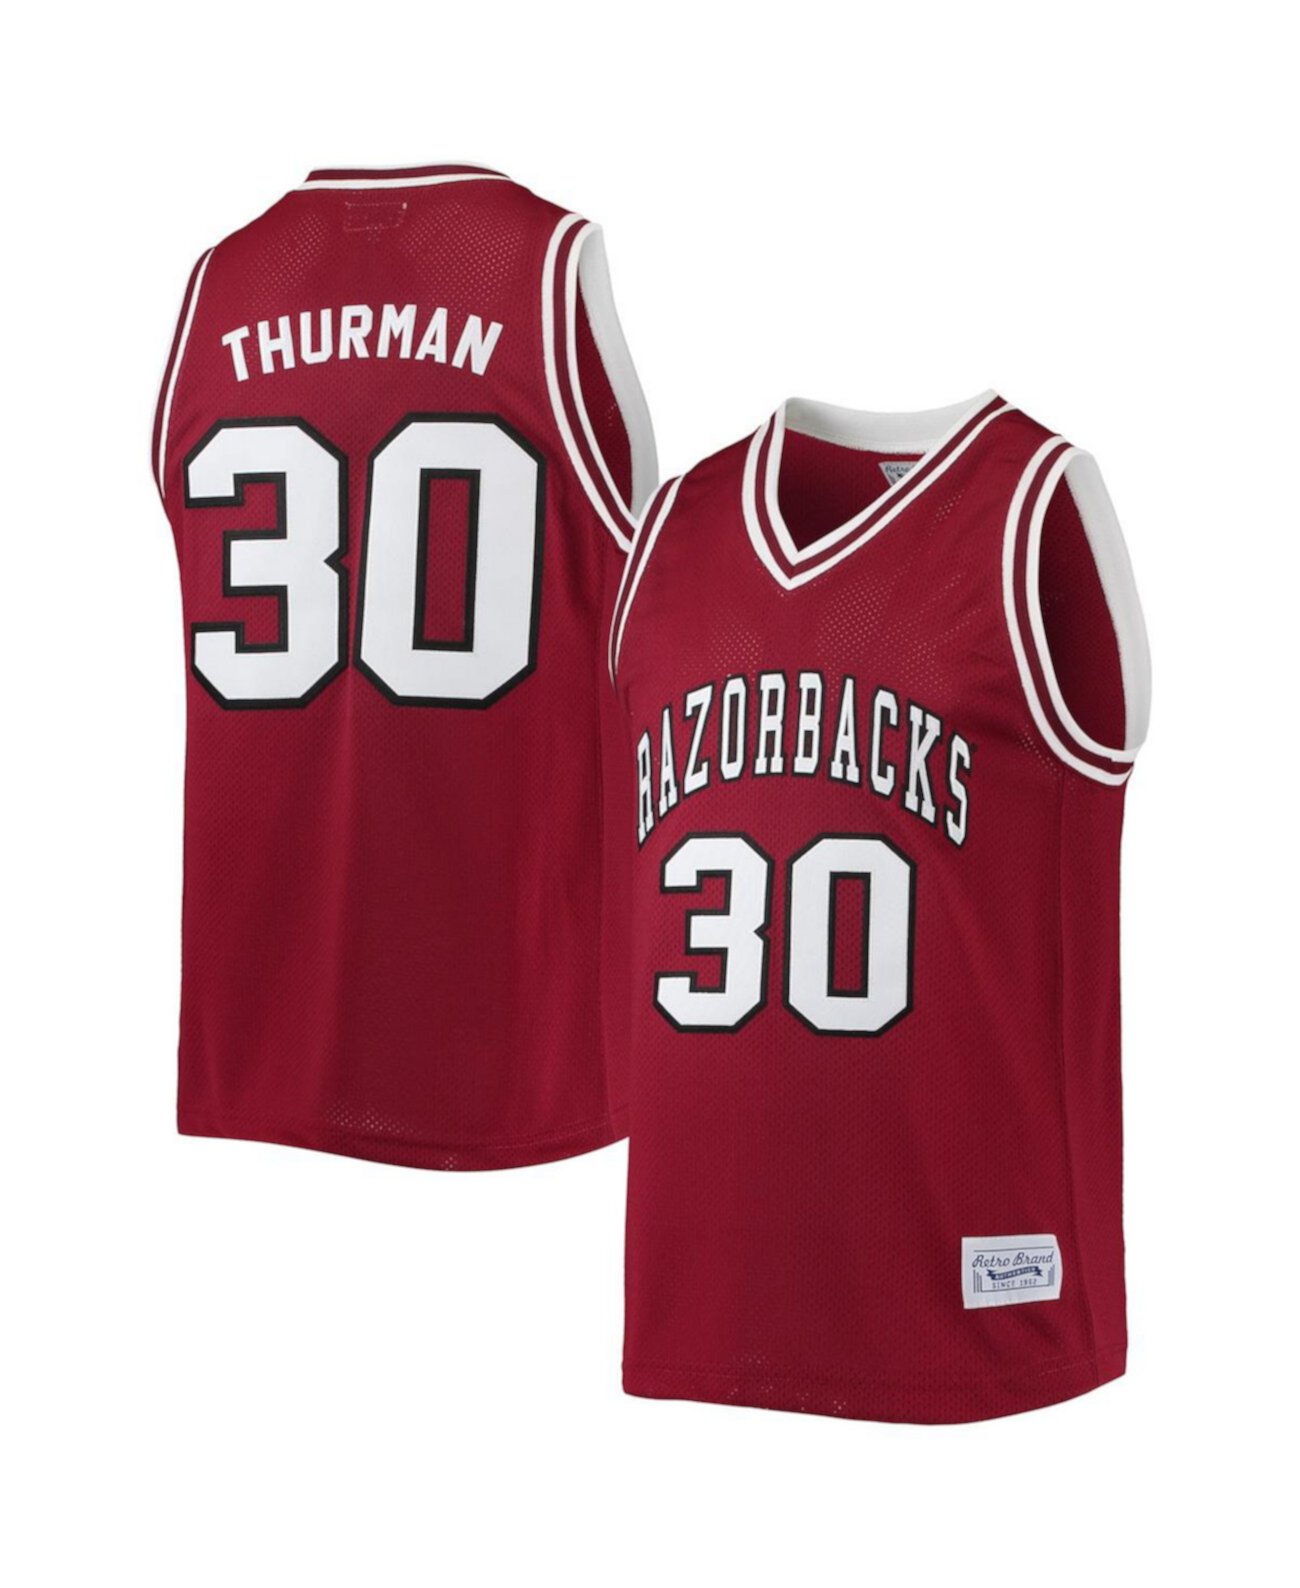 Мужская памятная классическая баскетбольная майка Scotty Thurman Cardinal Arkansas Razorbacks Alumni Original Retro Brand